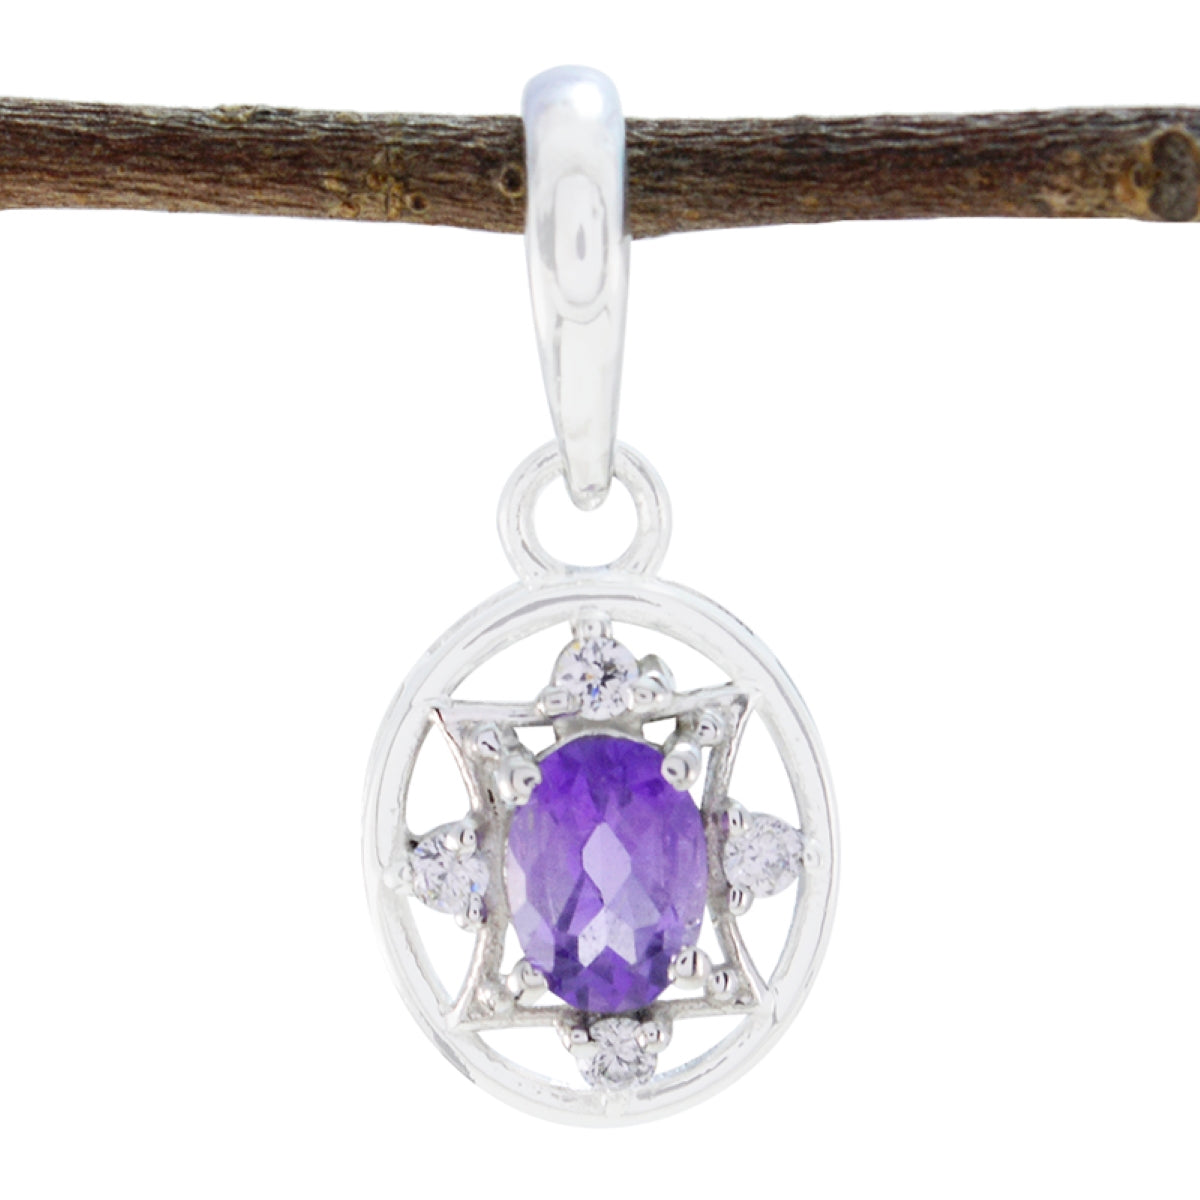 Riyo savoureux pierres précieuses ovale à facettes violet améthyste pendentif en argent cadeau pour fiançailles